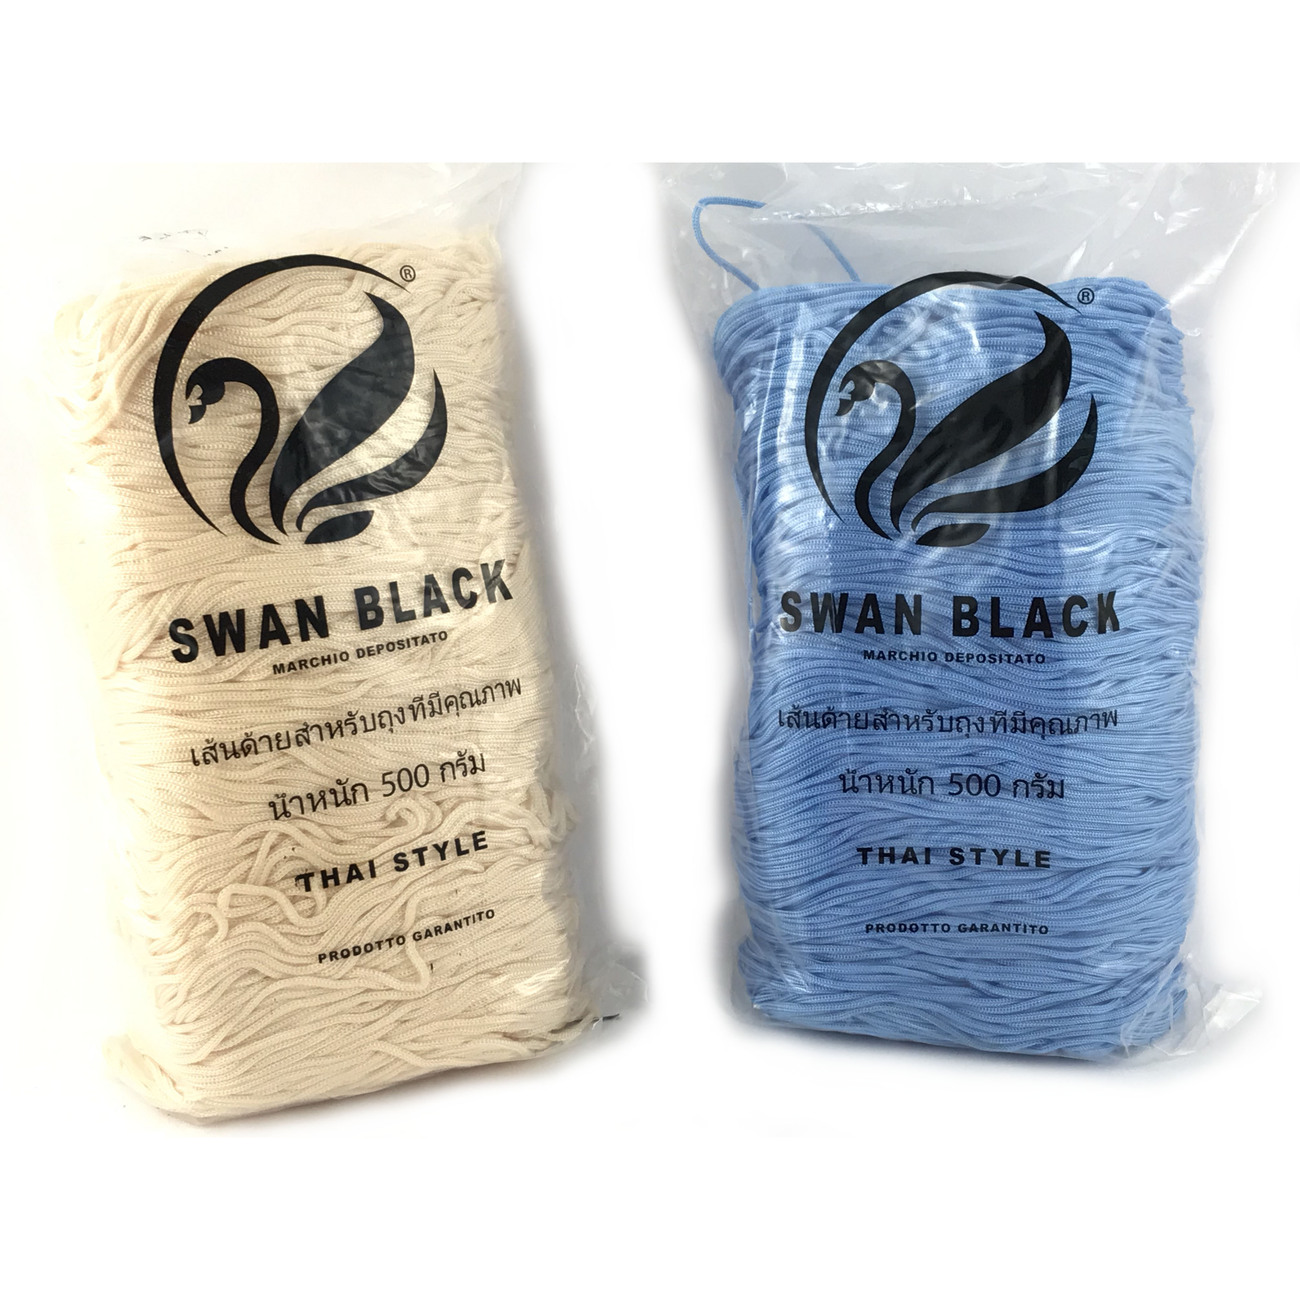 Cordino Swan Black per borse